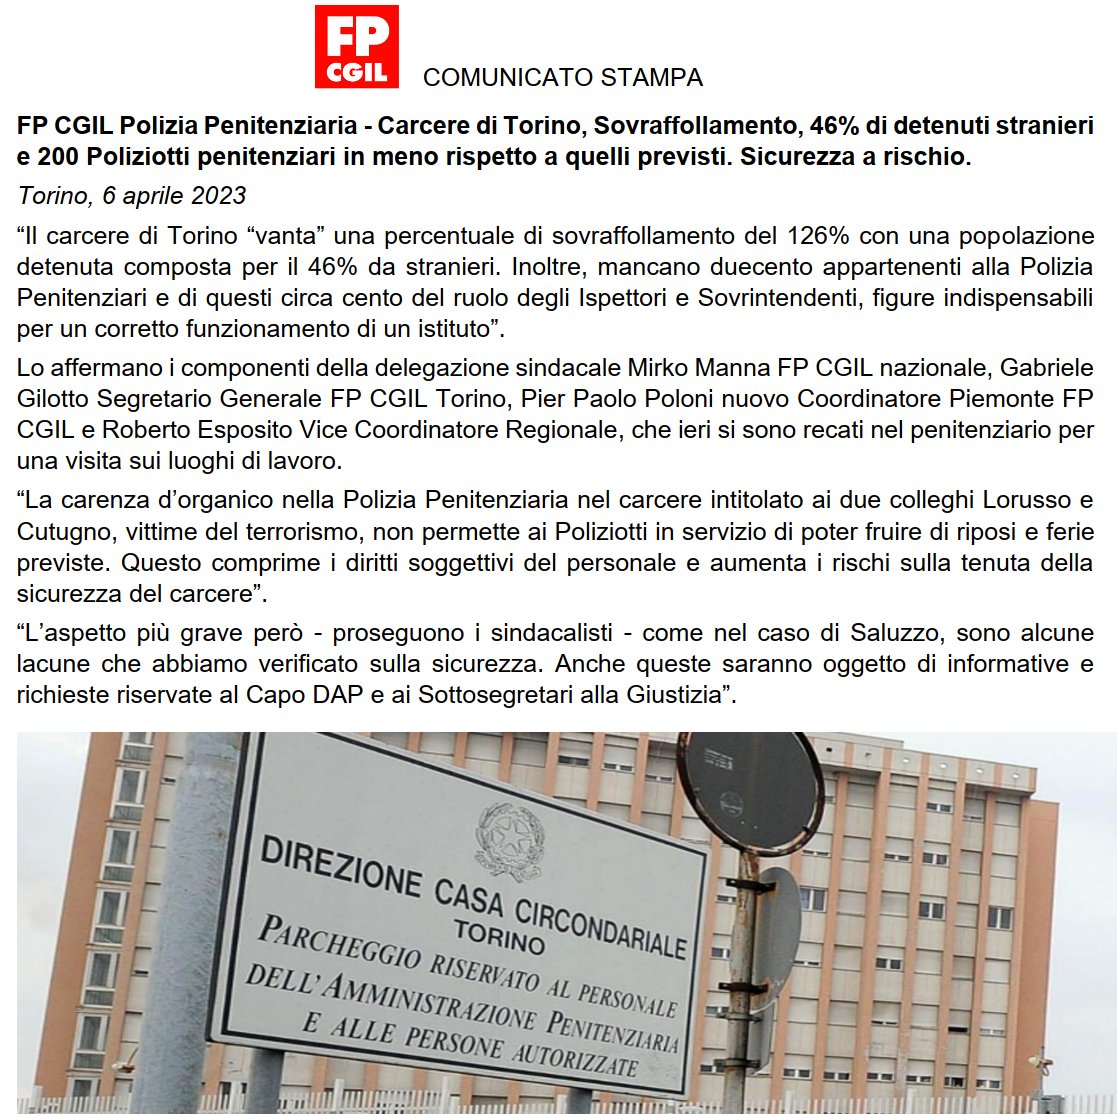 📷#PoliziaPenitenziaria Carcere Torino 𝗦𝗼𝘃𝗿𝗮𝗳𝗳𝗼𝗹𝗹𝗮𝗺𝗲𝗻𝘁𝗼 𝗱𝗲𝗹 𝟭𝟮𝟲% 𝗲 𝟮𝟬𝟬 𝗣𝗼𝗹𝗶𝘇𝗶𝗼𝘁𝘁𝗶 𝗽𝗲𝗻𝗶𝘁𝗲𝗻𝘇𝗶𝗮𝗿𝗶 𝗶𝗻 𝗺𝗲𝗻𝗼. 𝙎𝙞𝙘𝙪𝙧𝙚𝙯𝙯𝙖 𝙖 𝙧𝙞𝙨𝙘𝙝𝙞𝙤
@FpCgilPolPen #sicurezza #carceri #lorussoecutugno #cisiamo @FpCgilNazionale